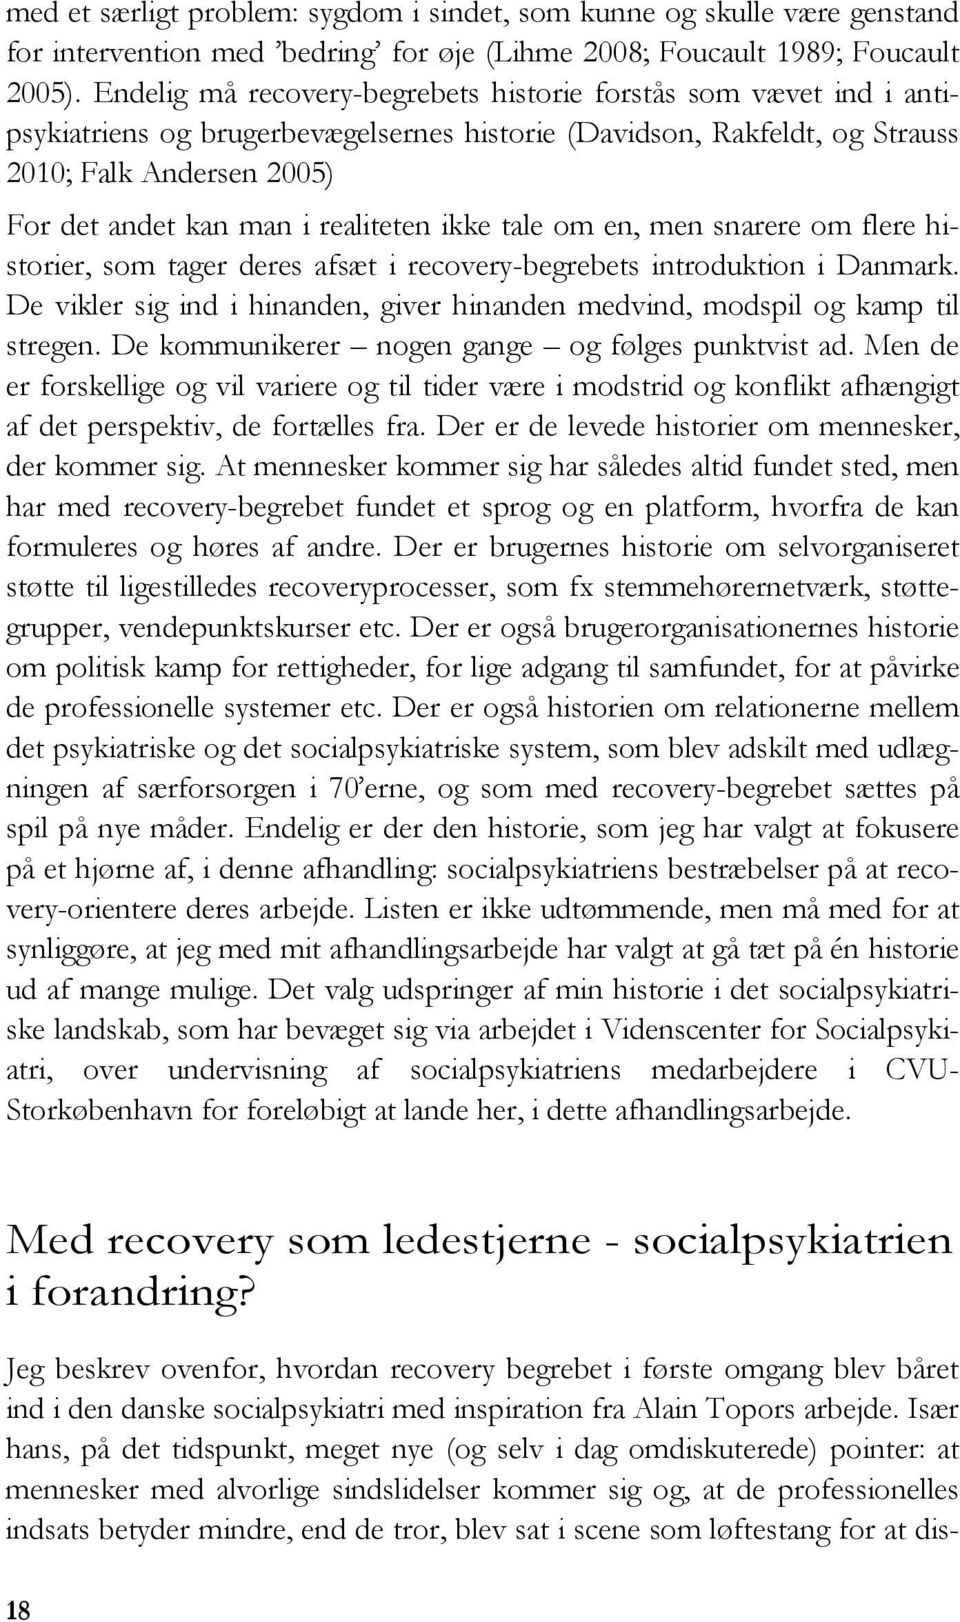 realiteten ikke tale om en, men snarere om flere historier, som tager deres afsæt i recovery-begrebets introduktion i Danmark.